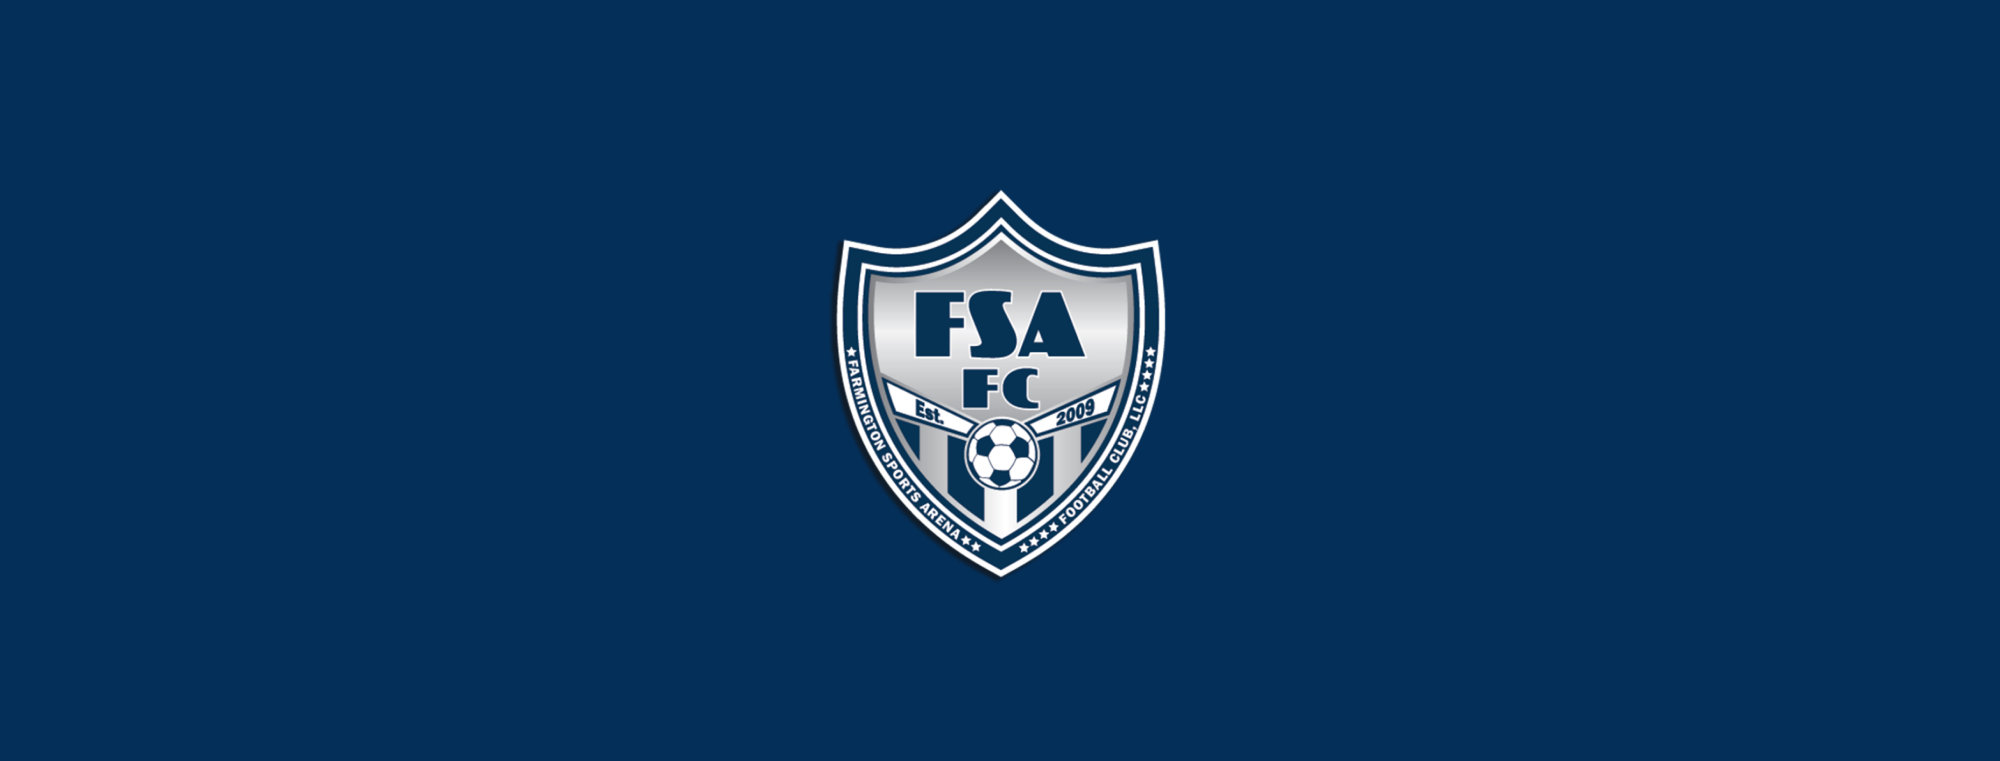 FSA FC